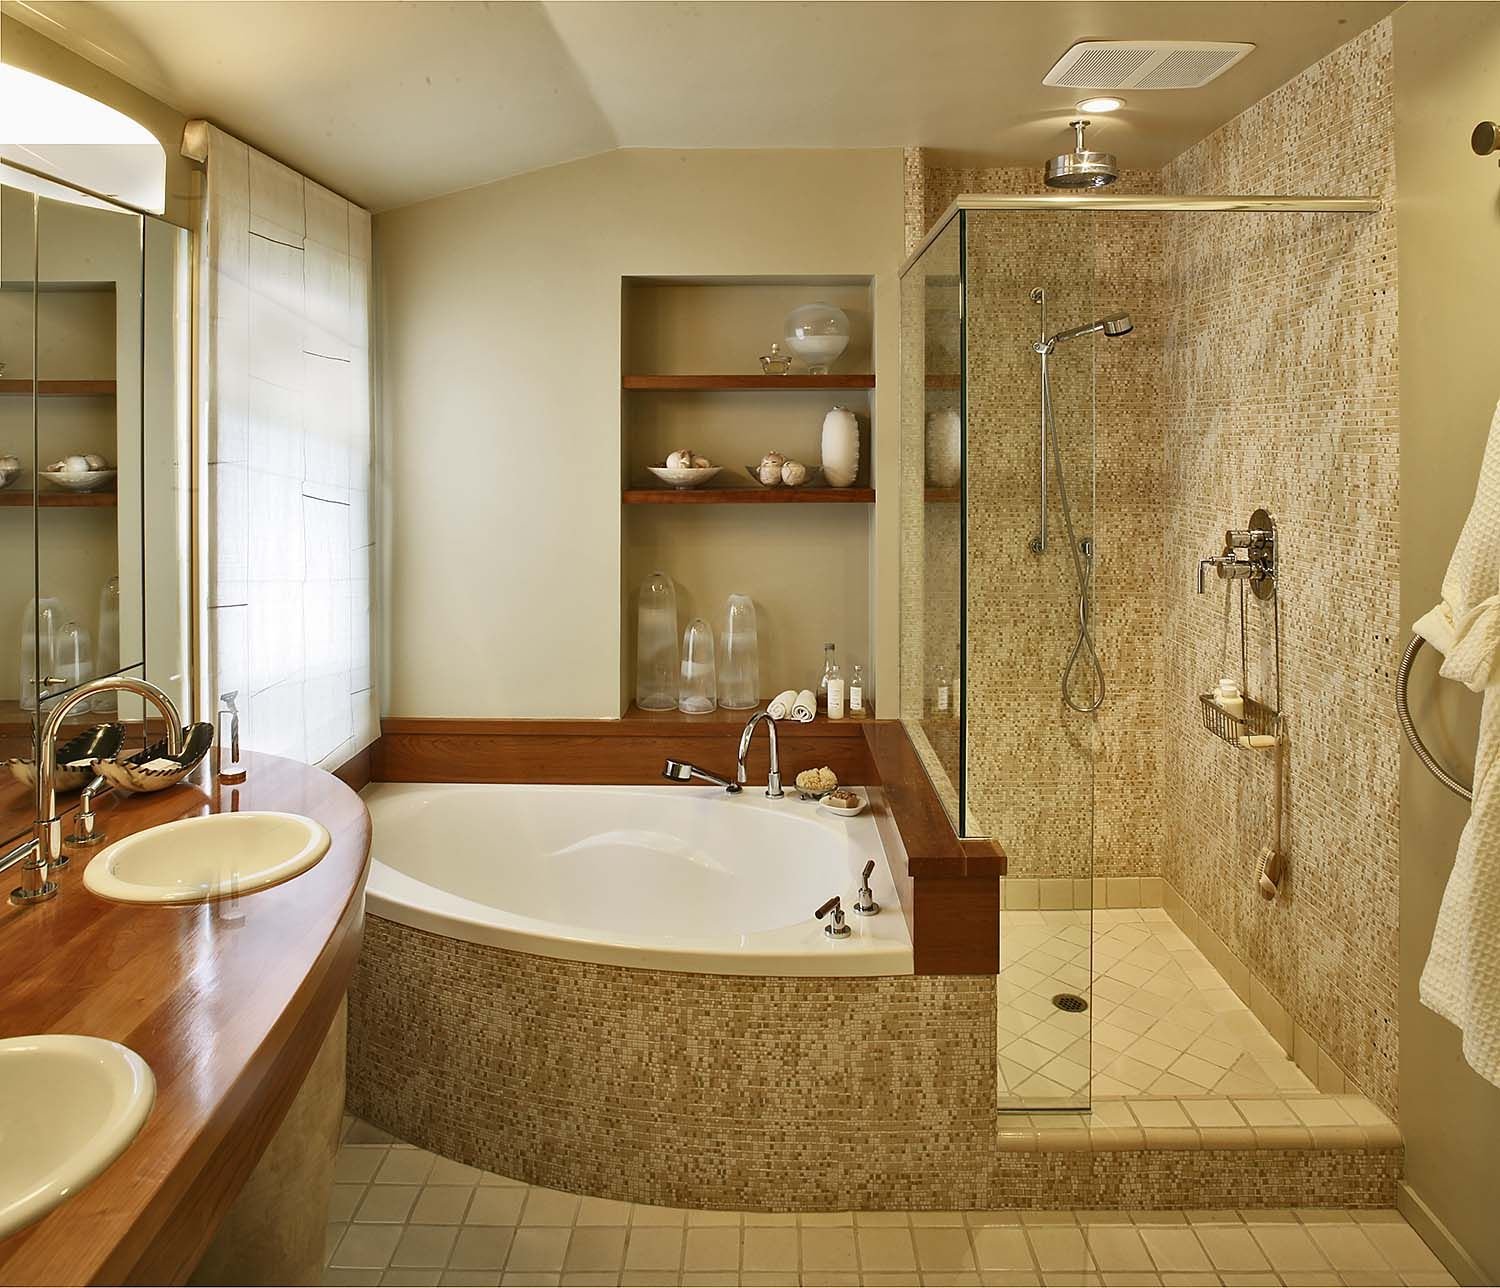 Угловая ванная — 85 фото удобного обустройства и красивого дизайна!